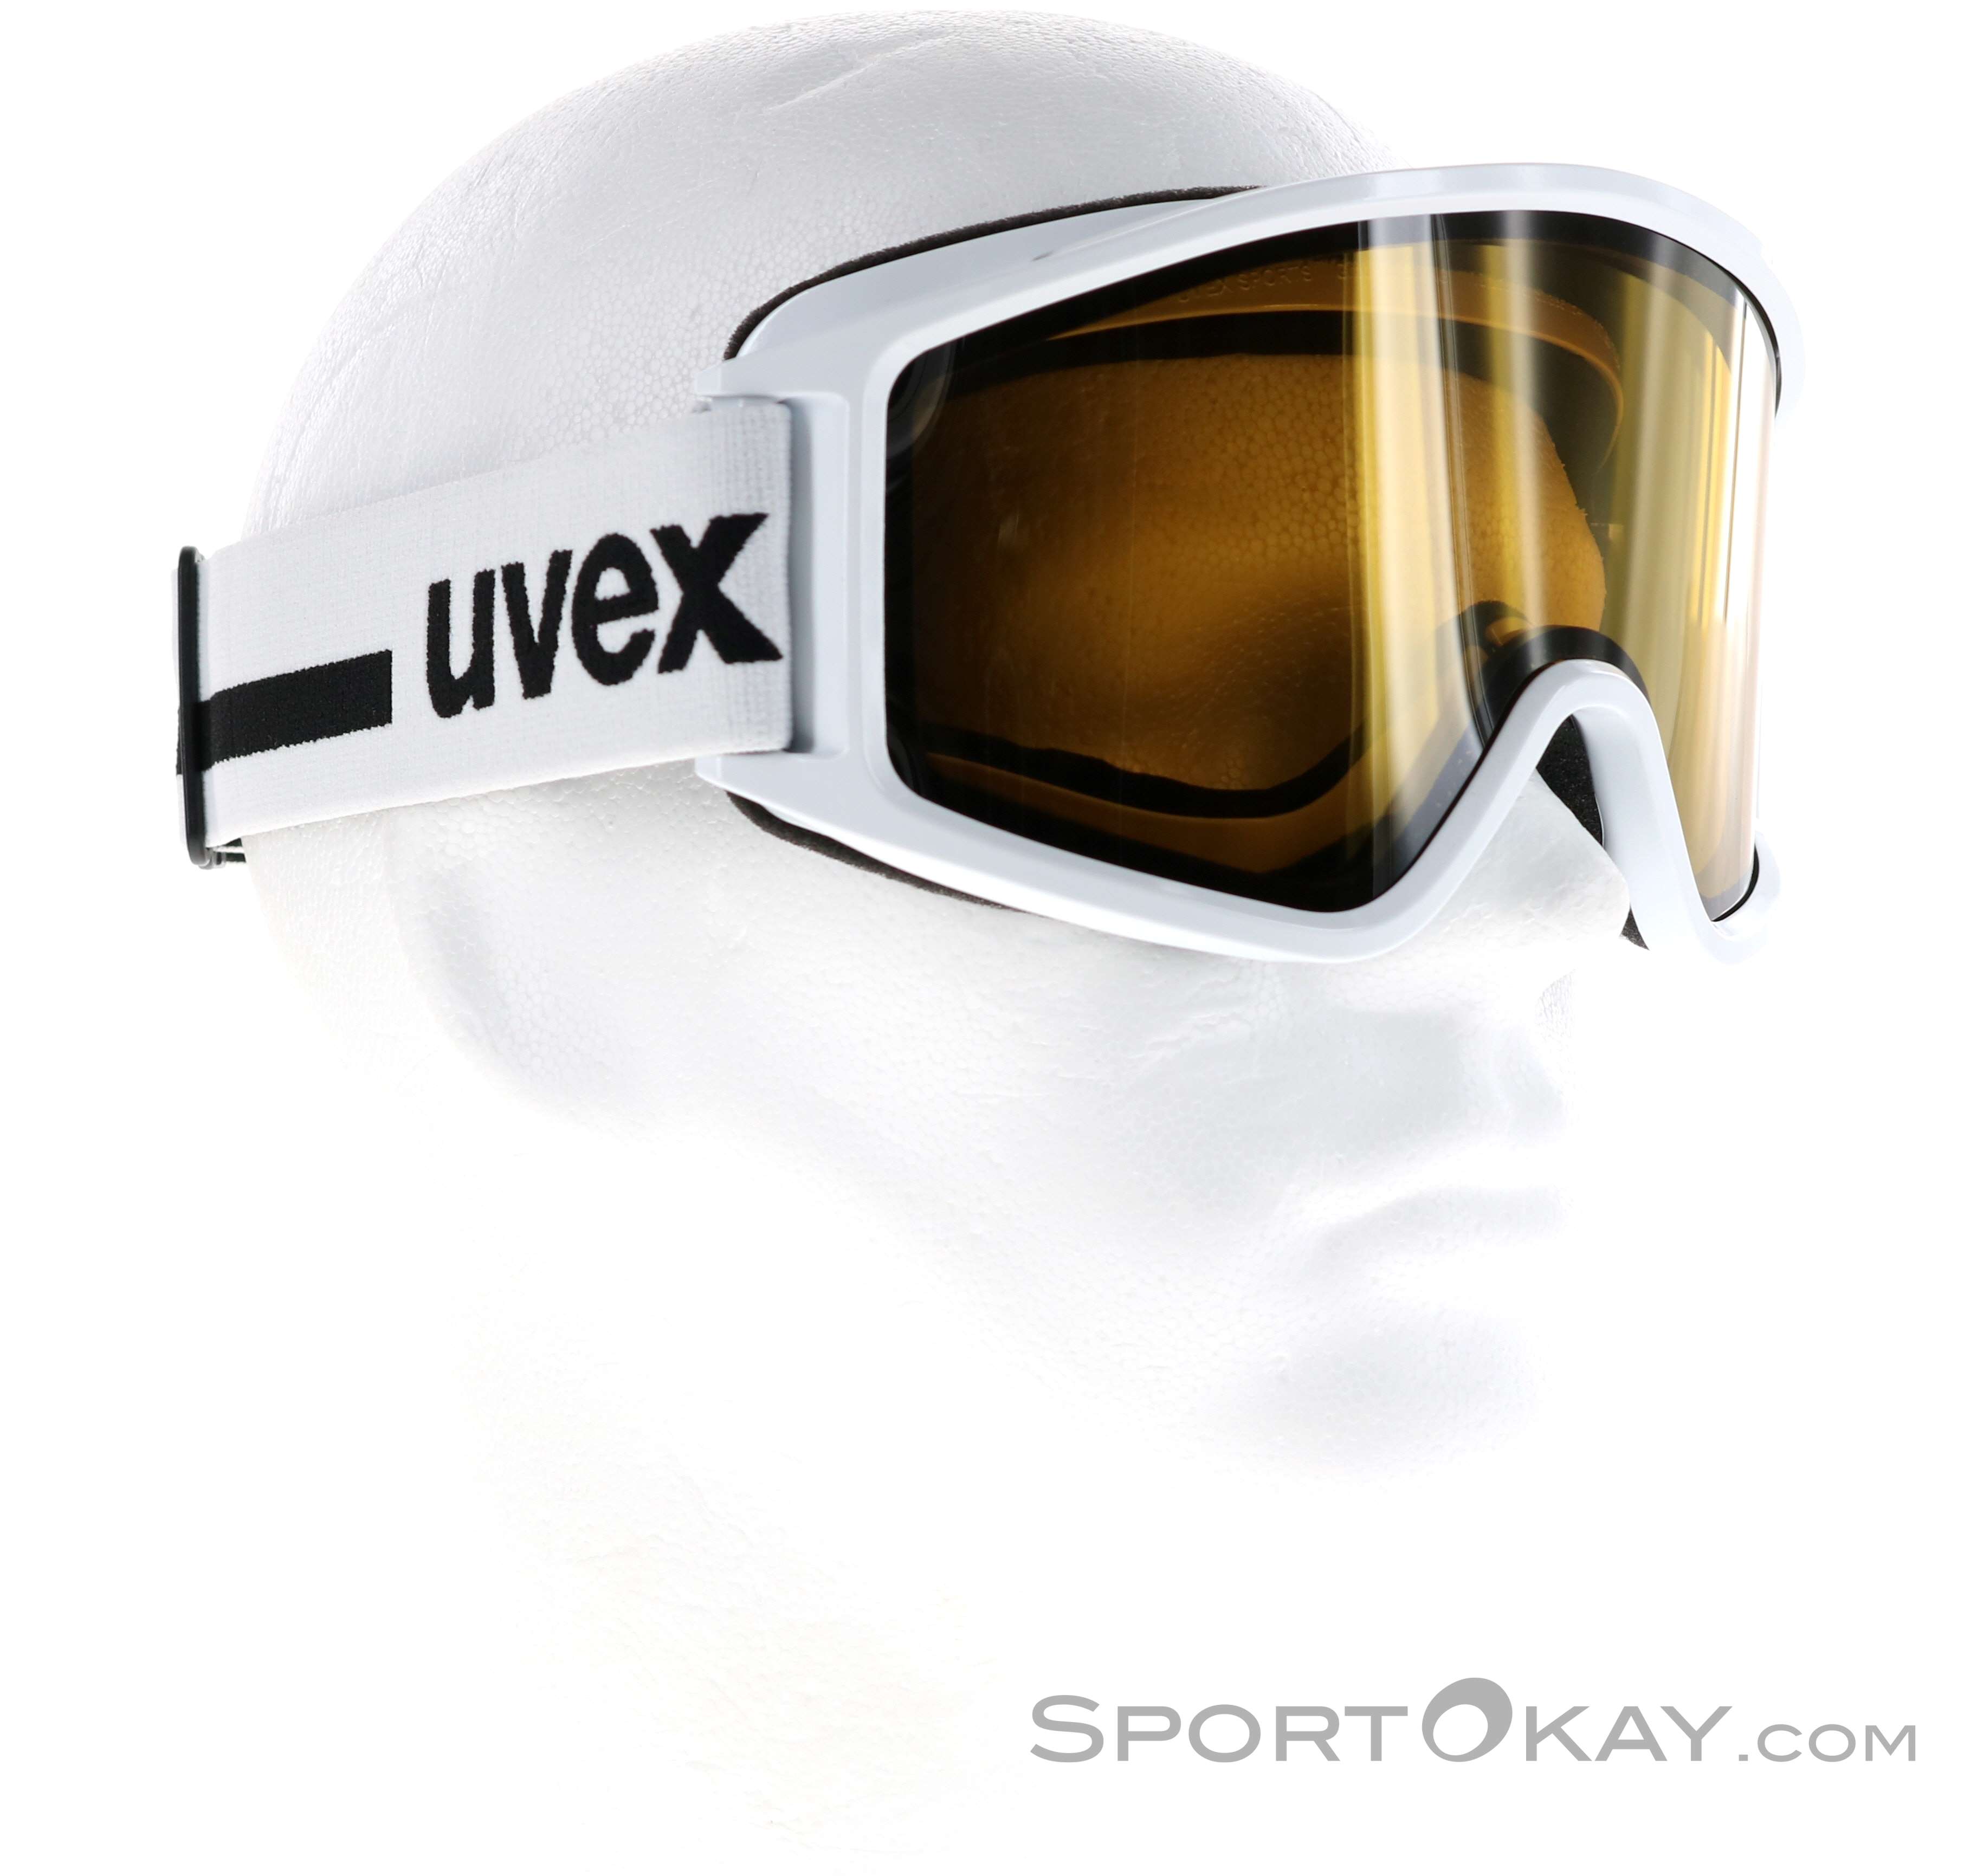 Uvex g.gl 3000 Top Maschera da Sci - Maschere da sci - Occhiali - Sci  alpinismo - Tutti